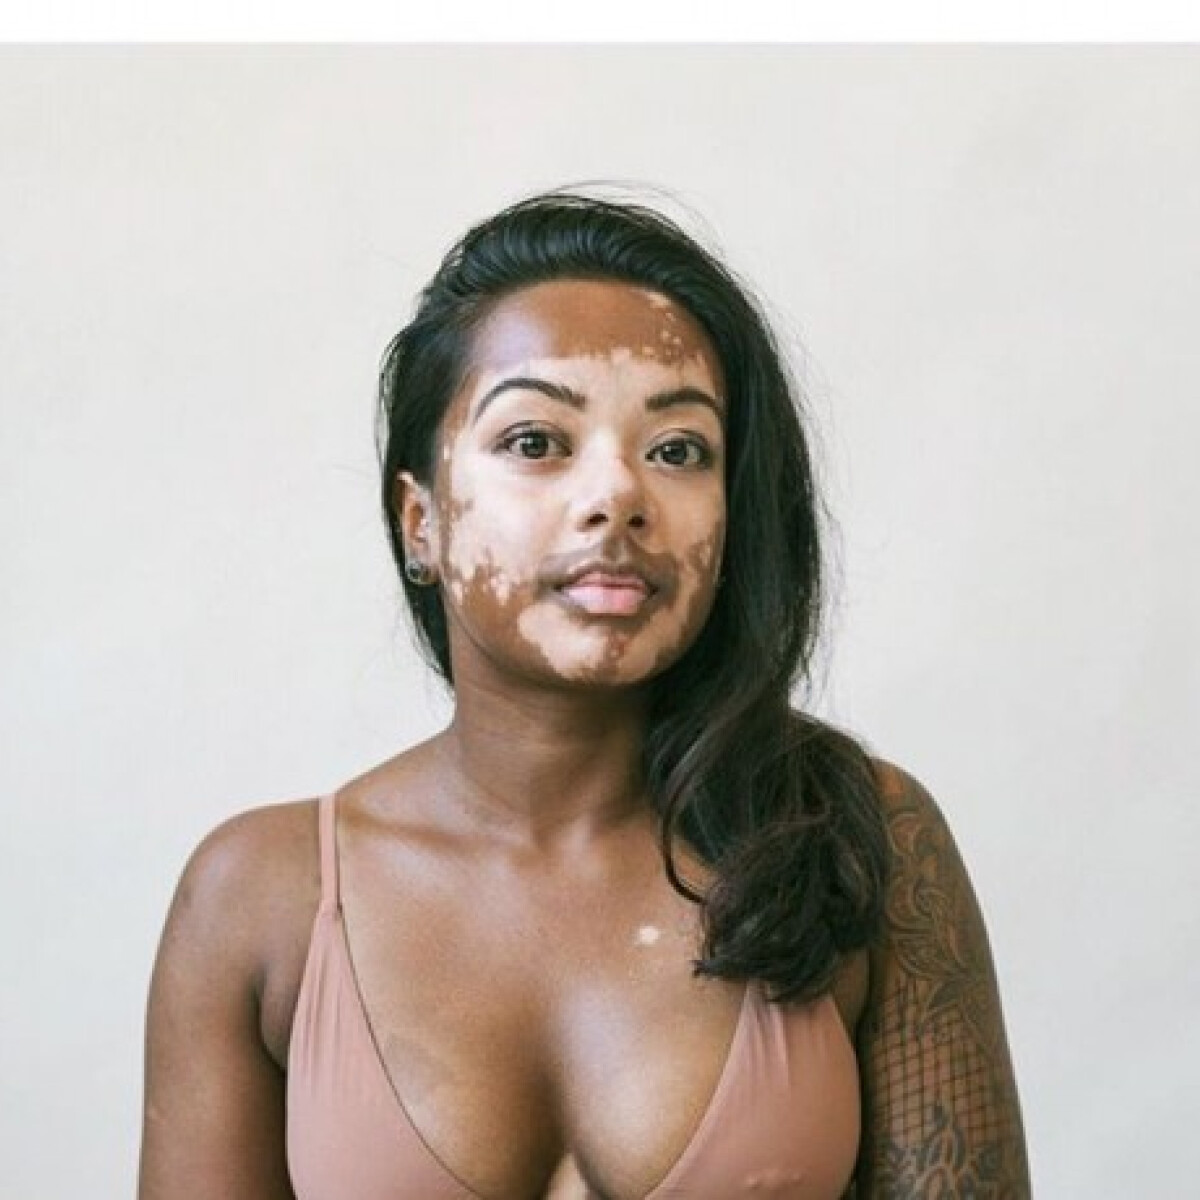 Különleges bőrbetegséggel élő nőkről készült varázslatos fotósorozat